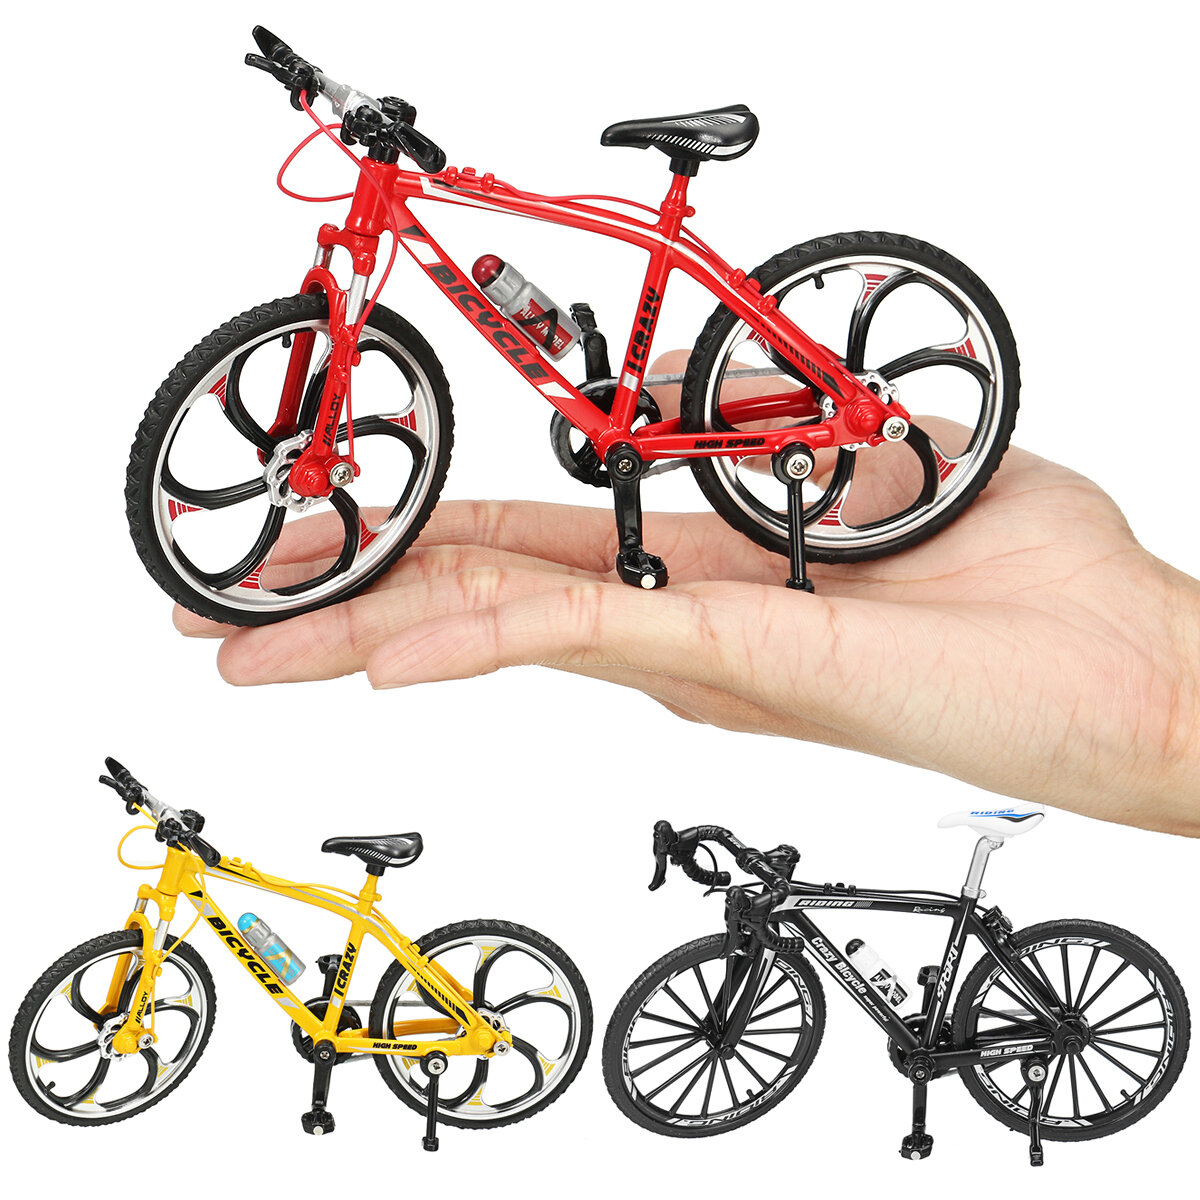 mini specialized toy bike